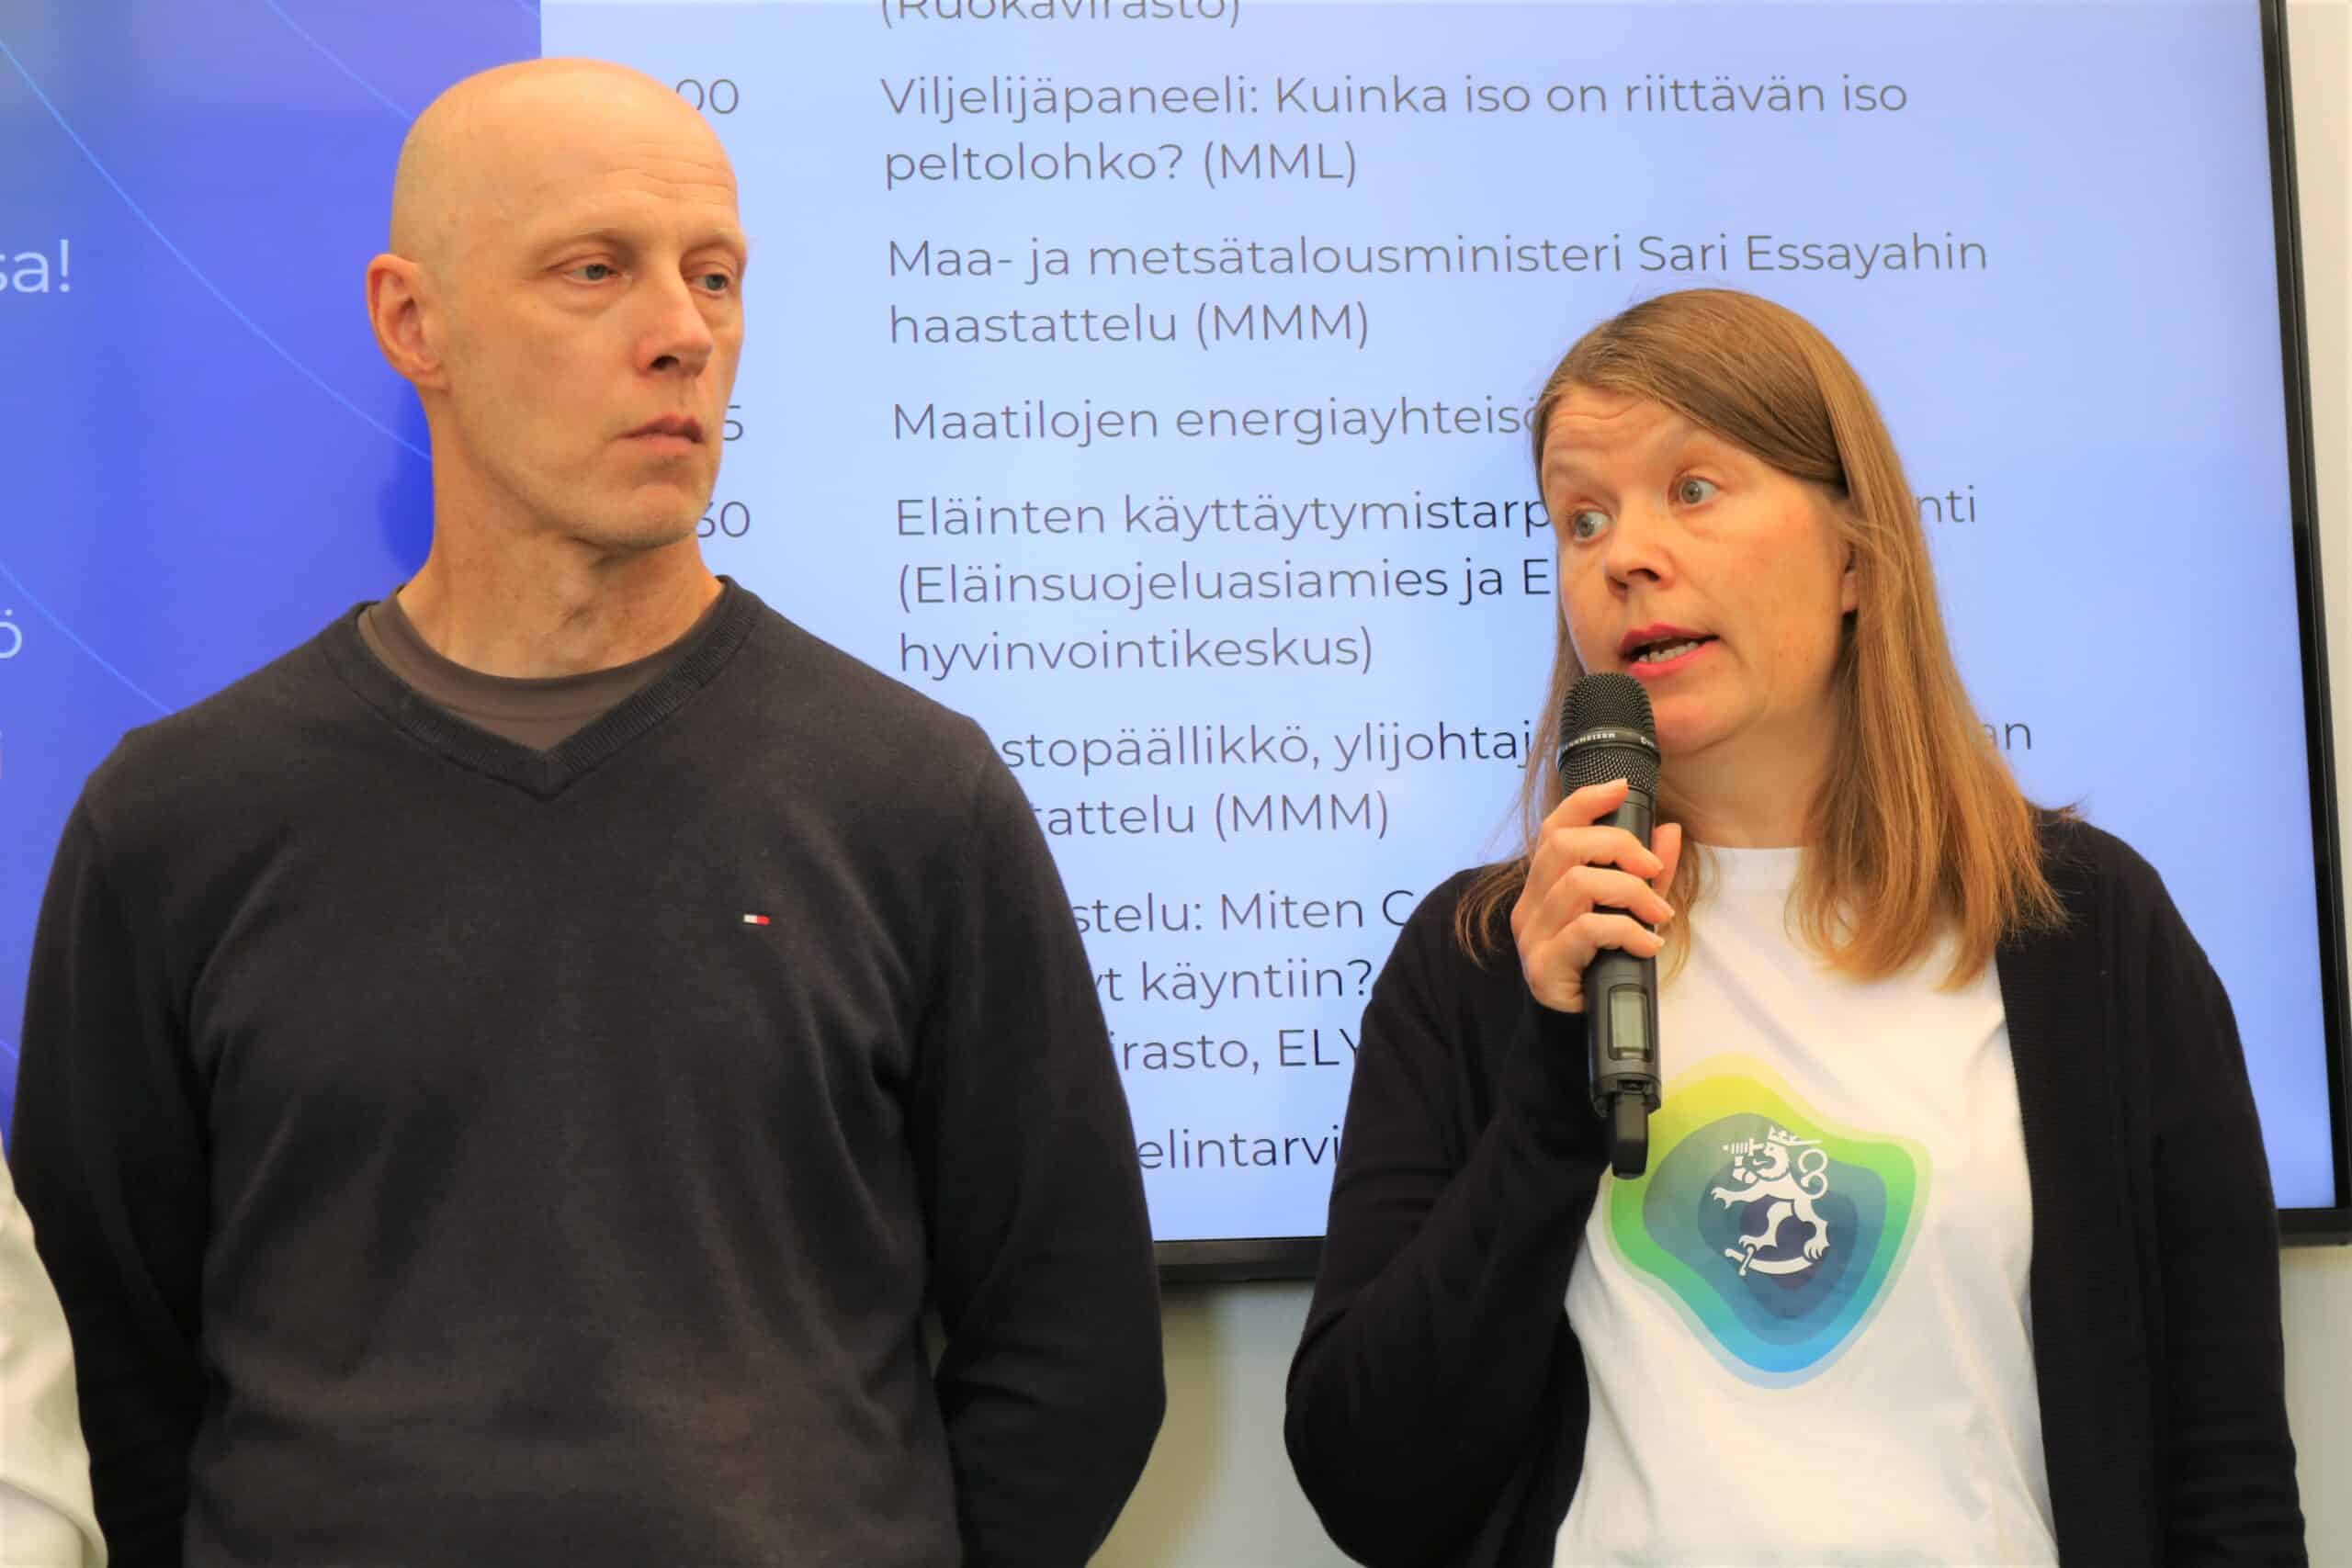 Kaksi ihmistä messulavalla. Vasemmalla Markku Paija ja oikealla Sanna Koivumäki mikrofoni kädessään.